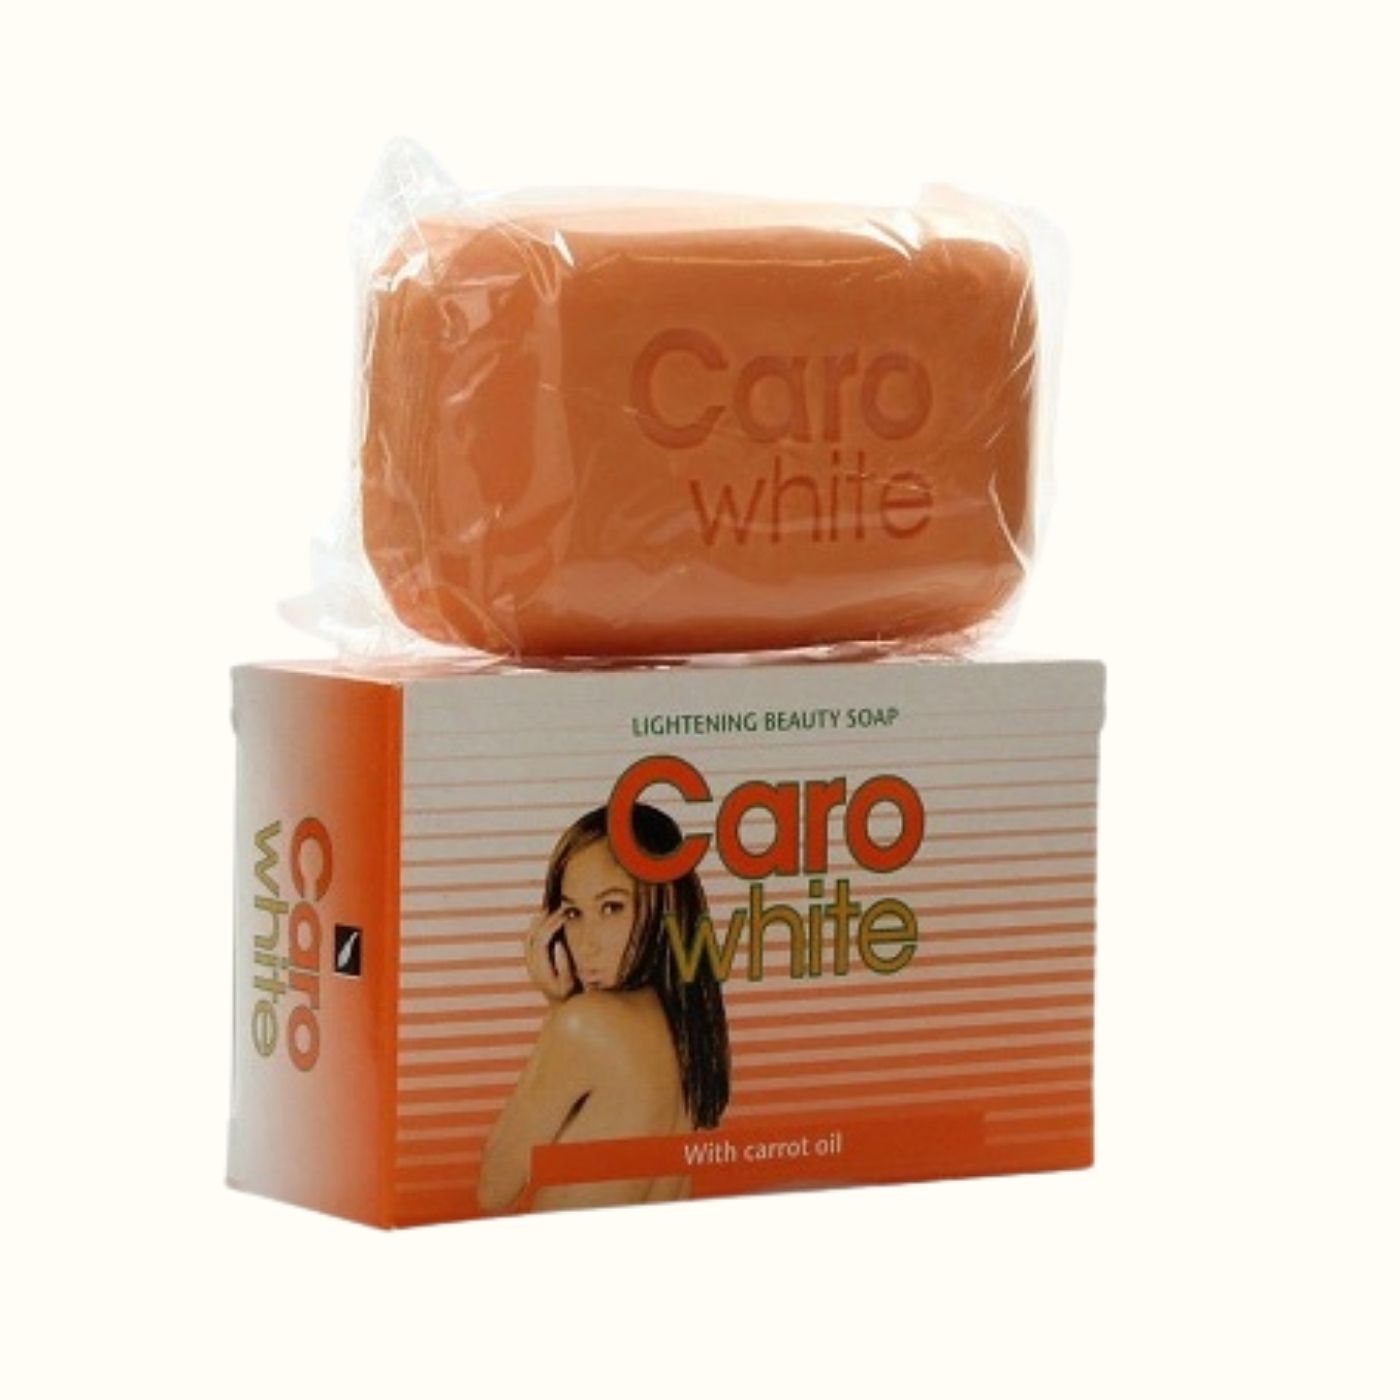 CARO WHITE ® LIGHTENING BEAUTY SOAP.